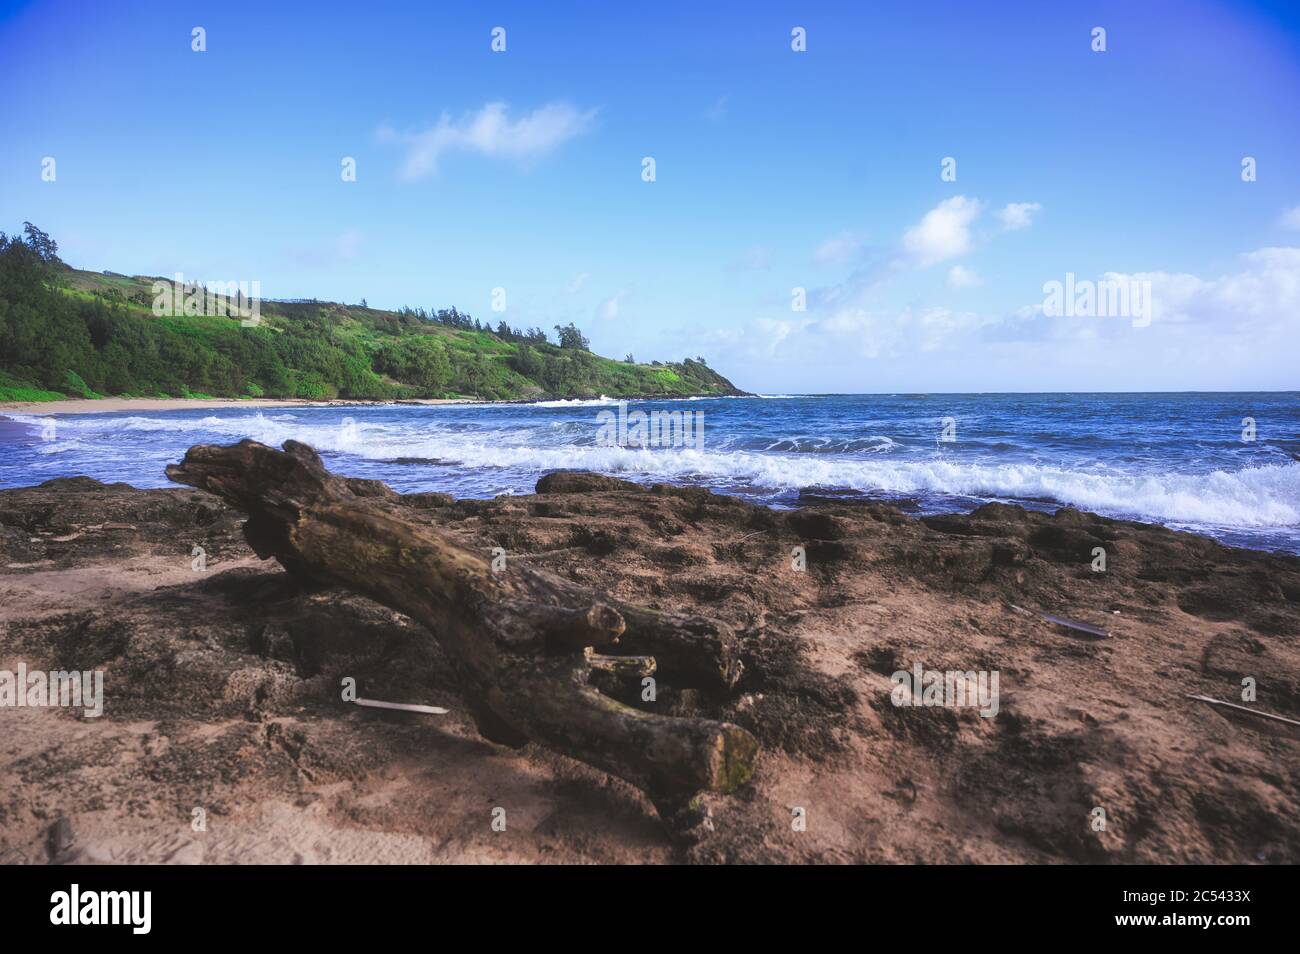 A beach on the coast of Kauai, Hawaii. Stock Photo